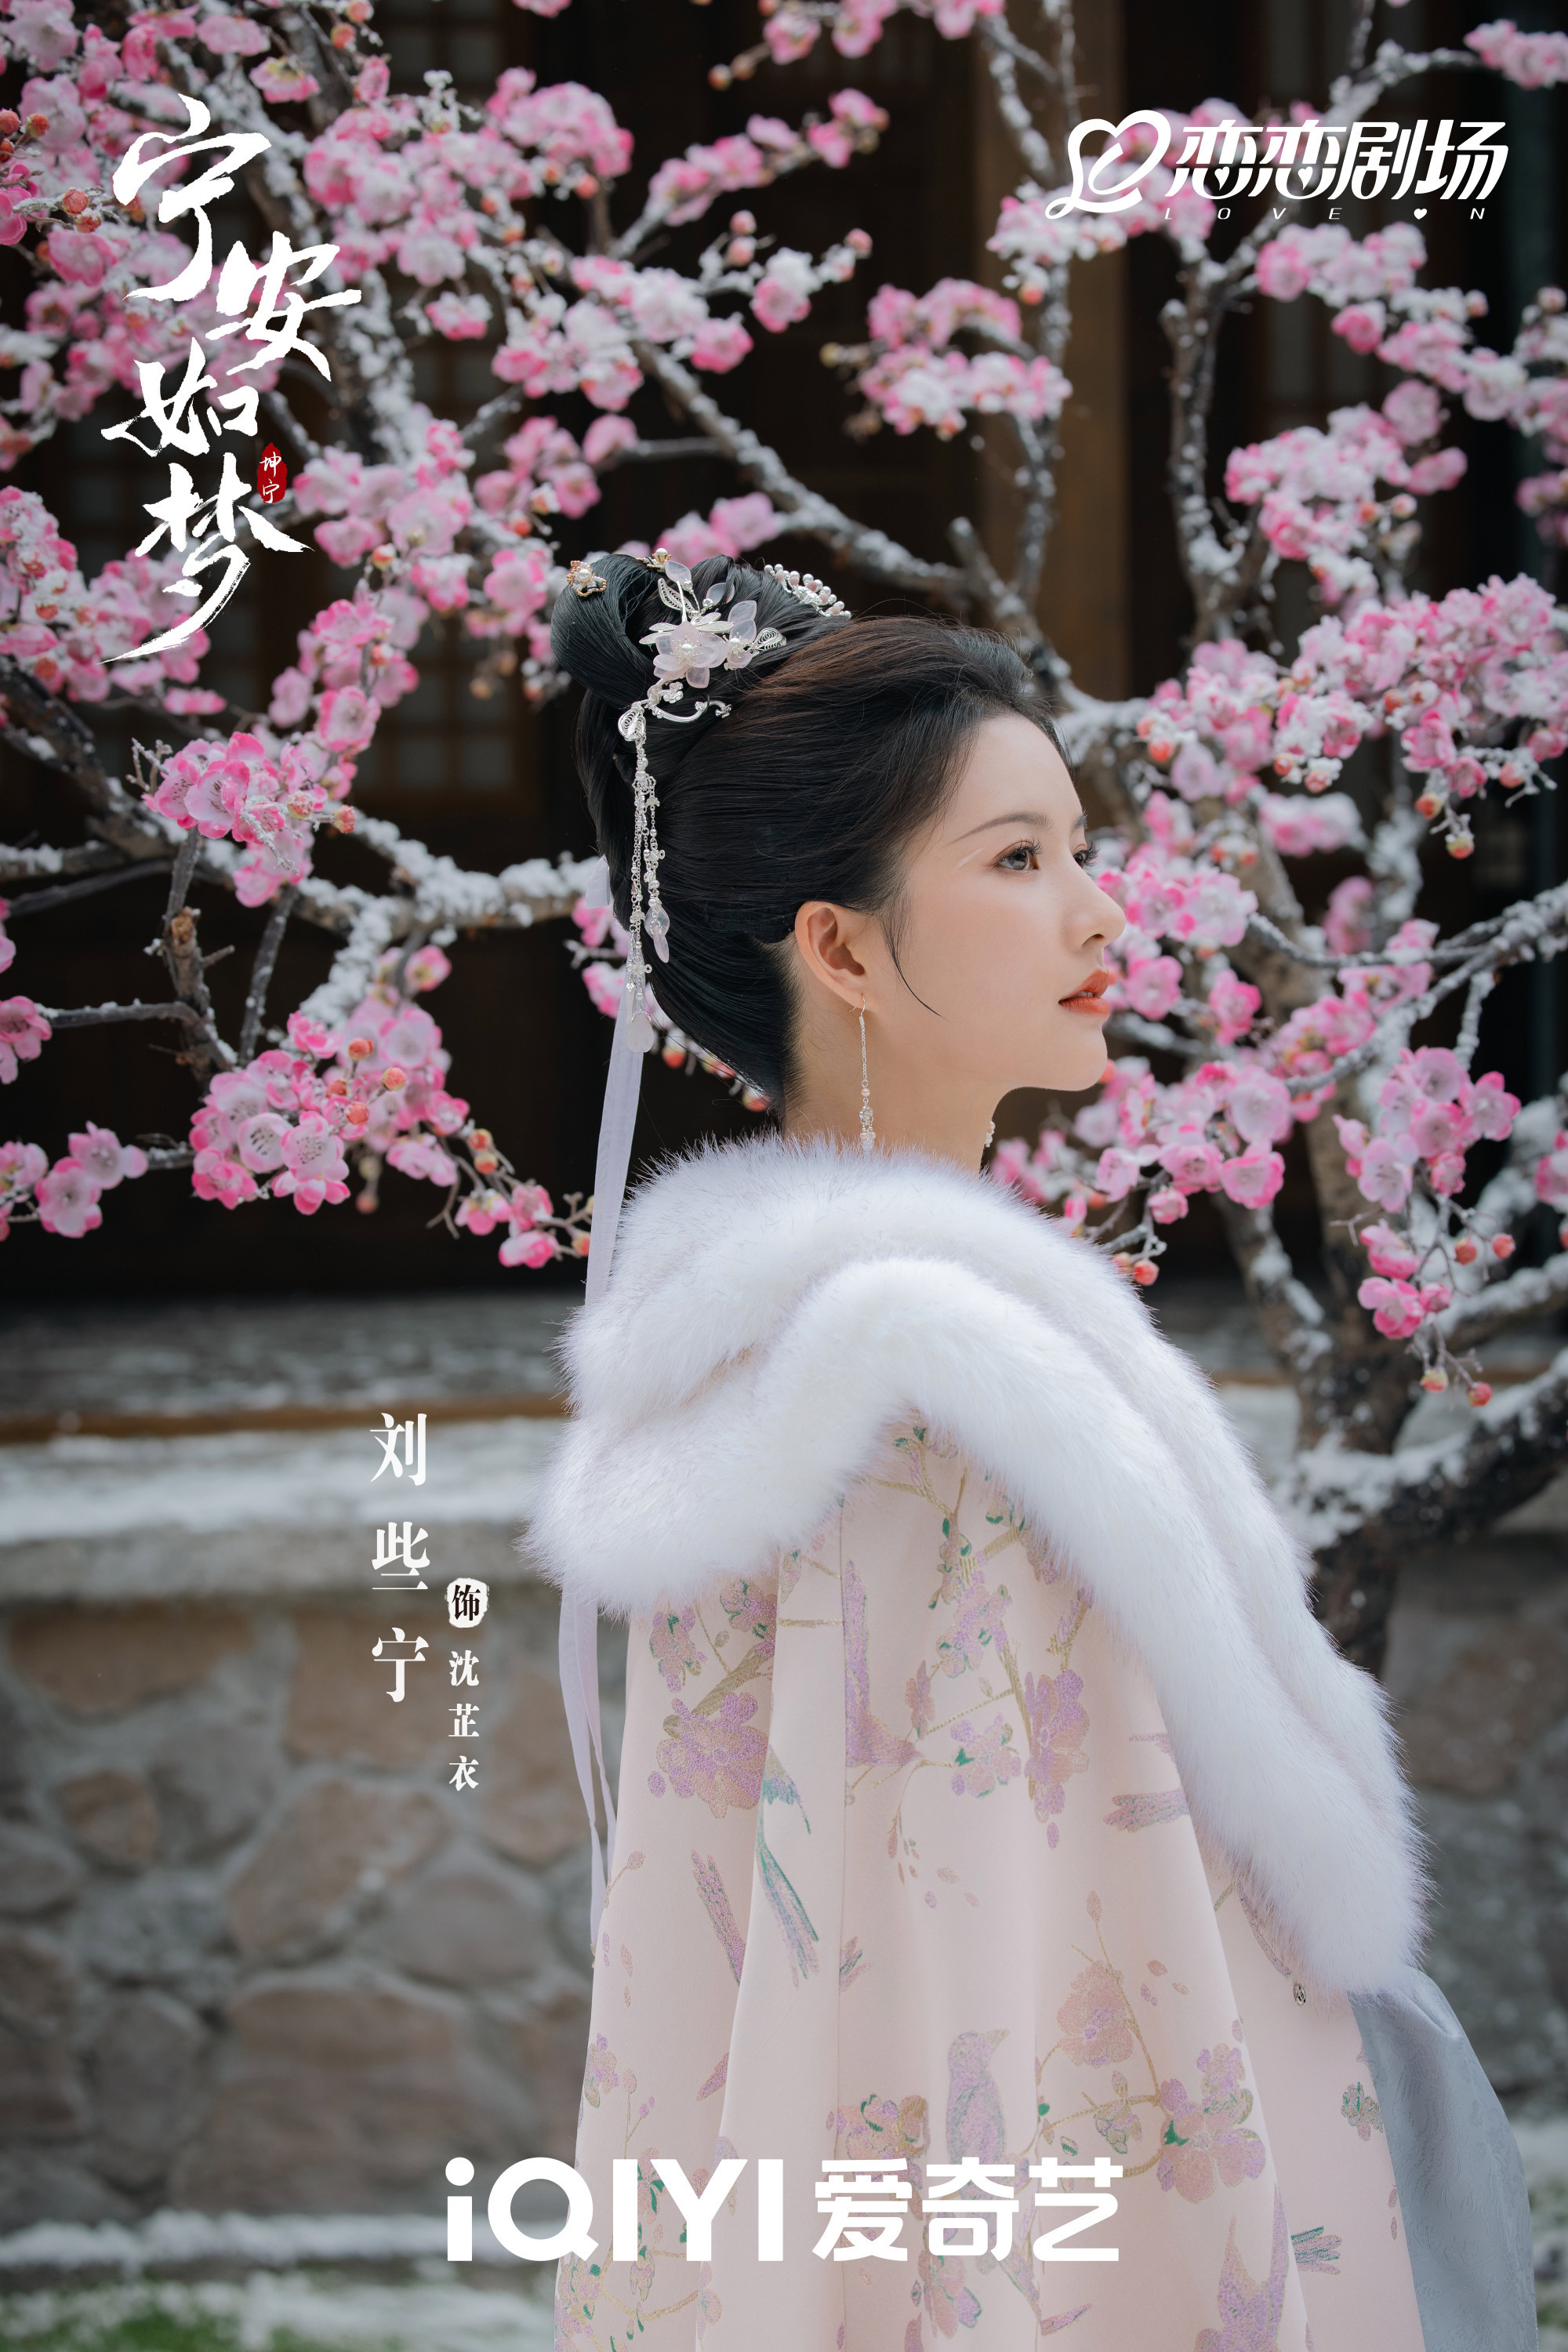 《宁安如梦》，爱奇艺2023年热度值破万的五部剧集之一。